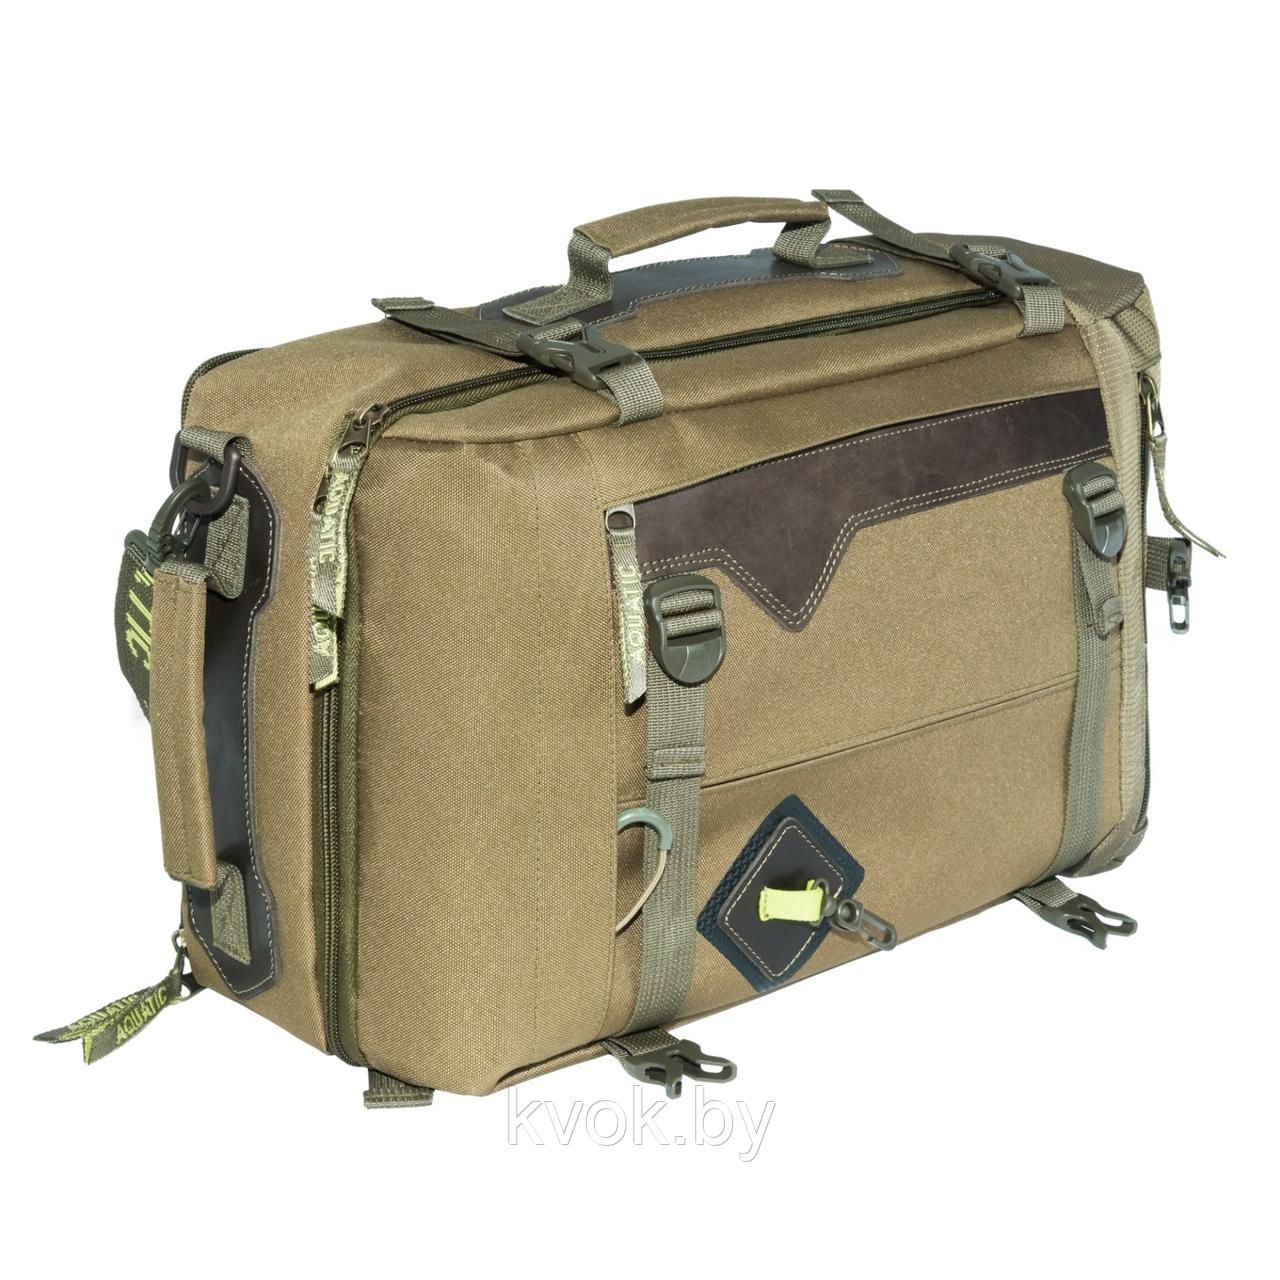 Сумка-рюкзак  AQUATIC С-28Х с кожаными накладками (цвет: хаки), фото 1